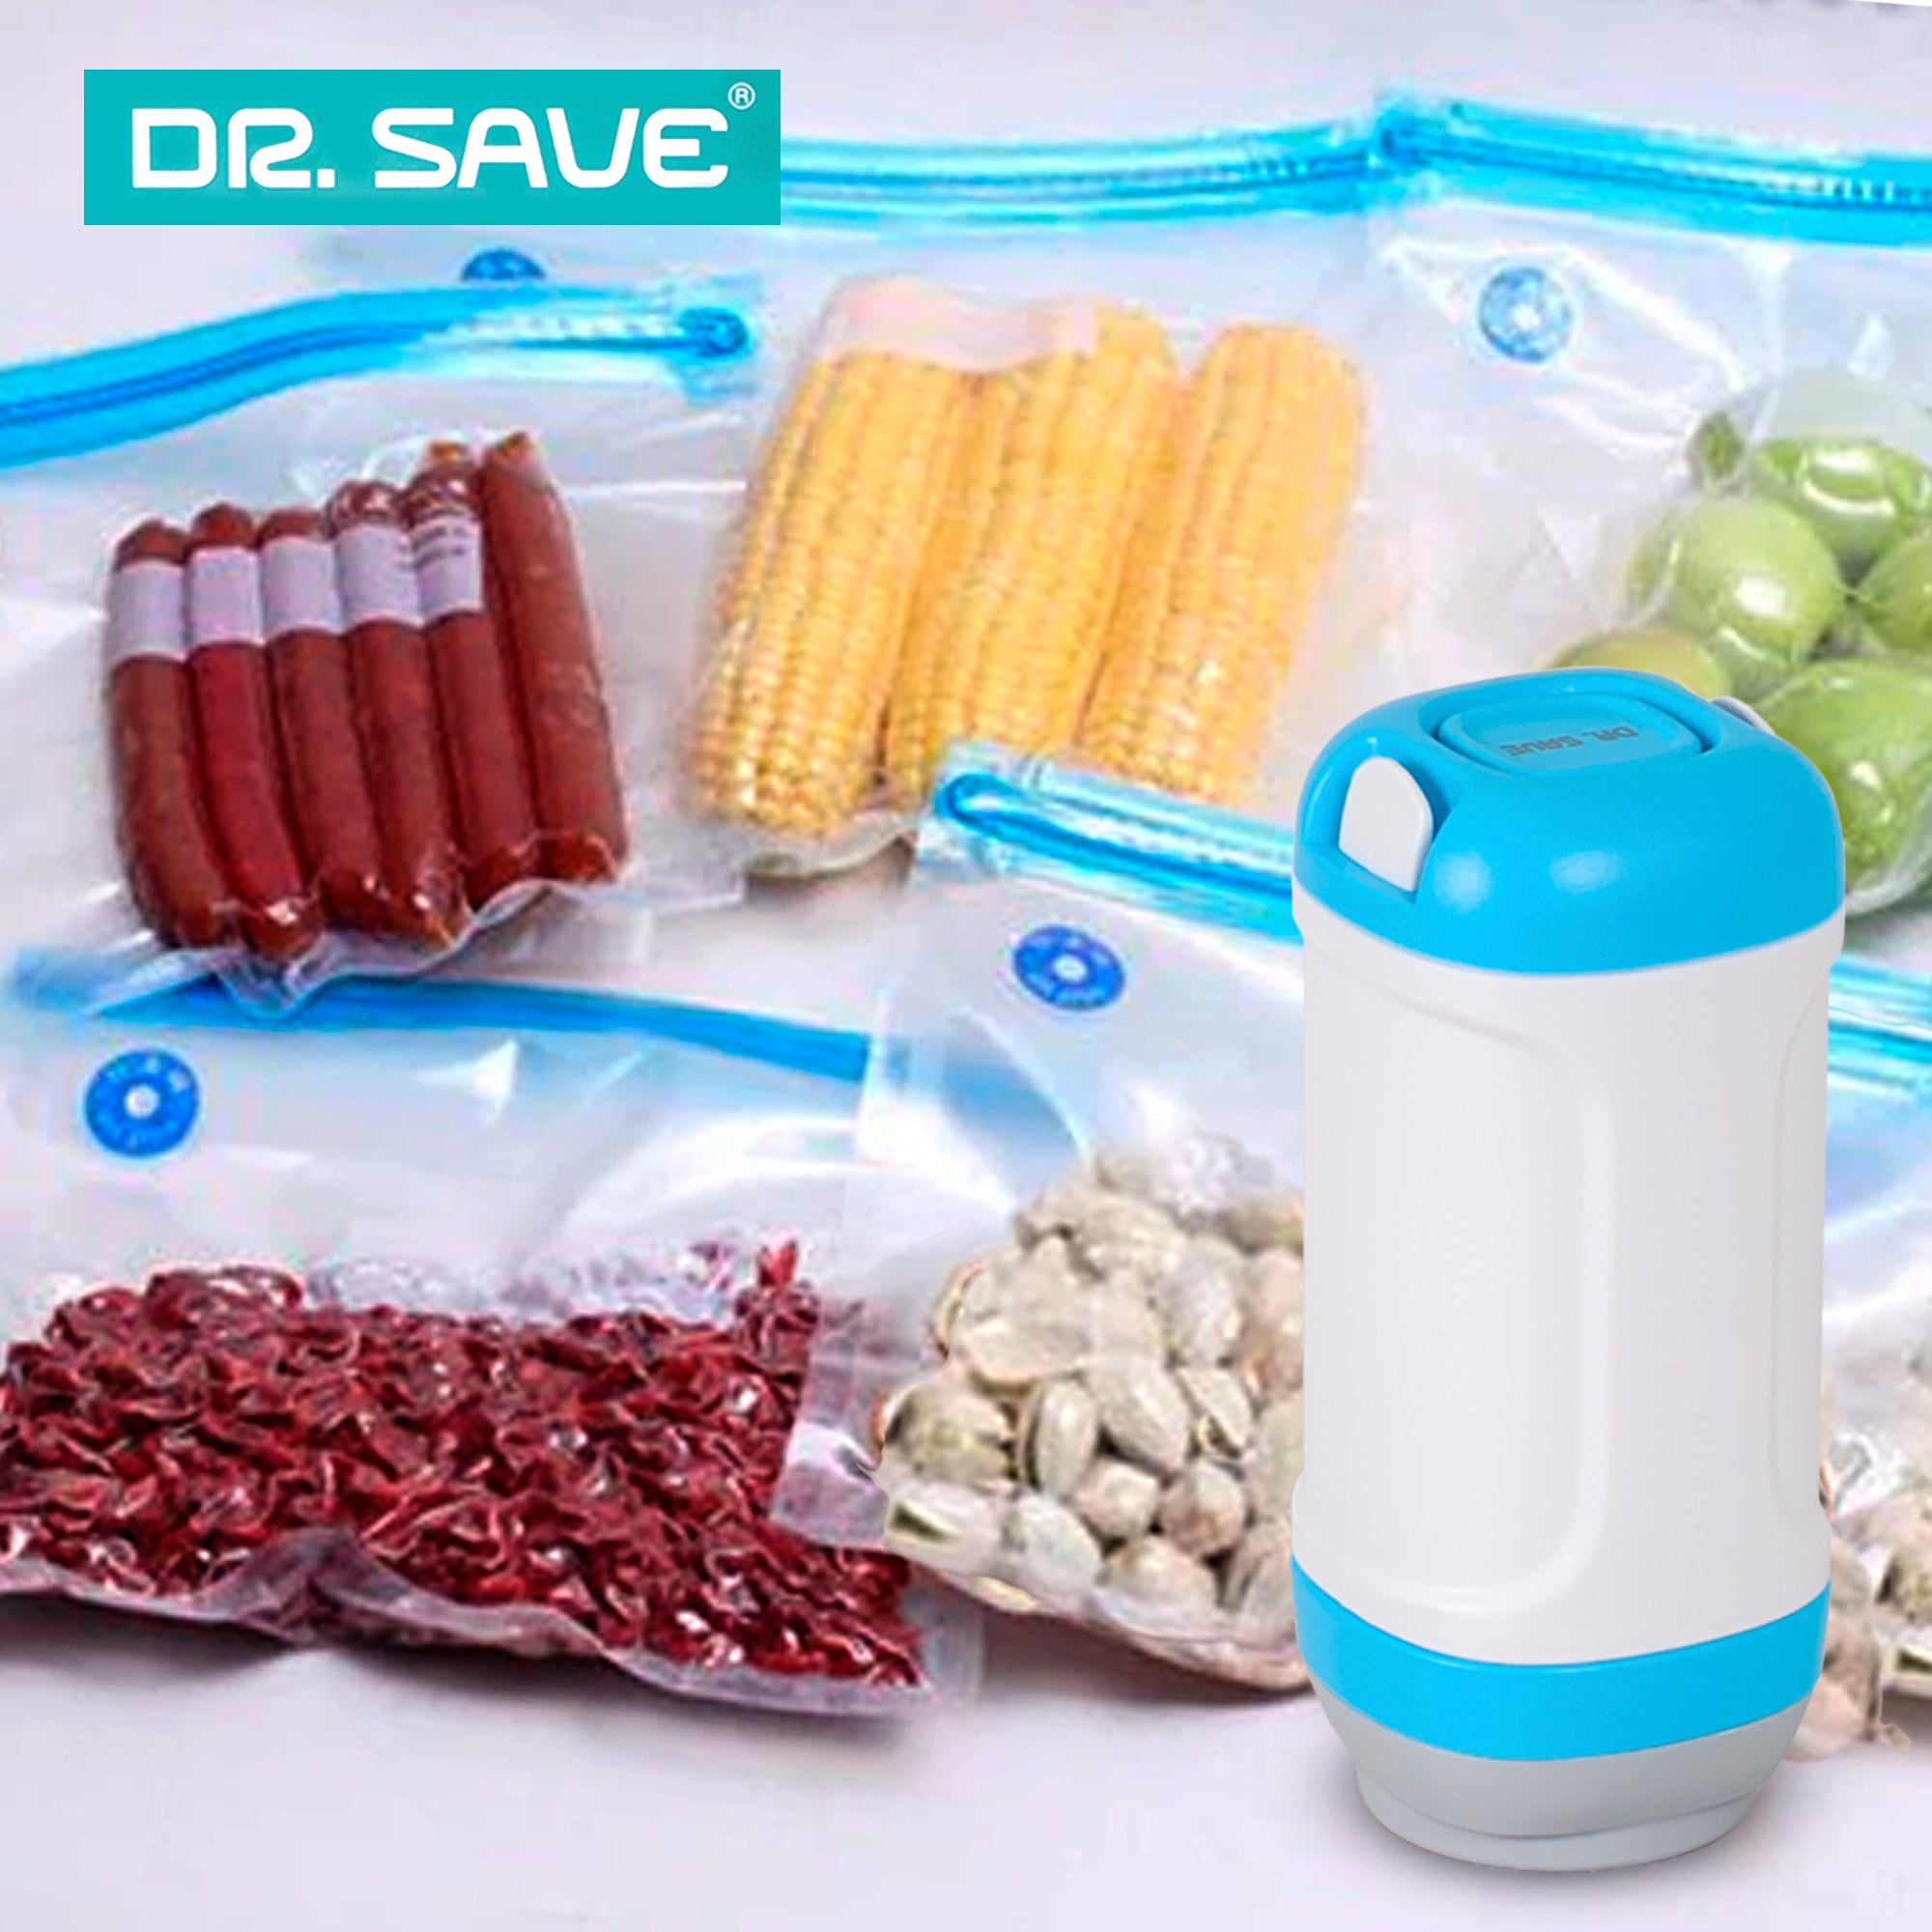 17pcs Reusable Bpa-free Vacuum Sealer Bags Set For Cooking/food